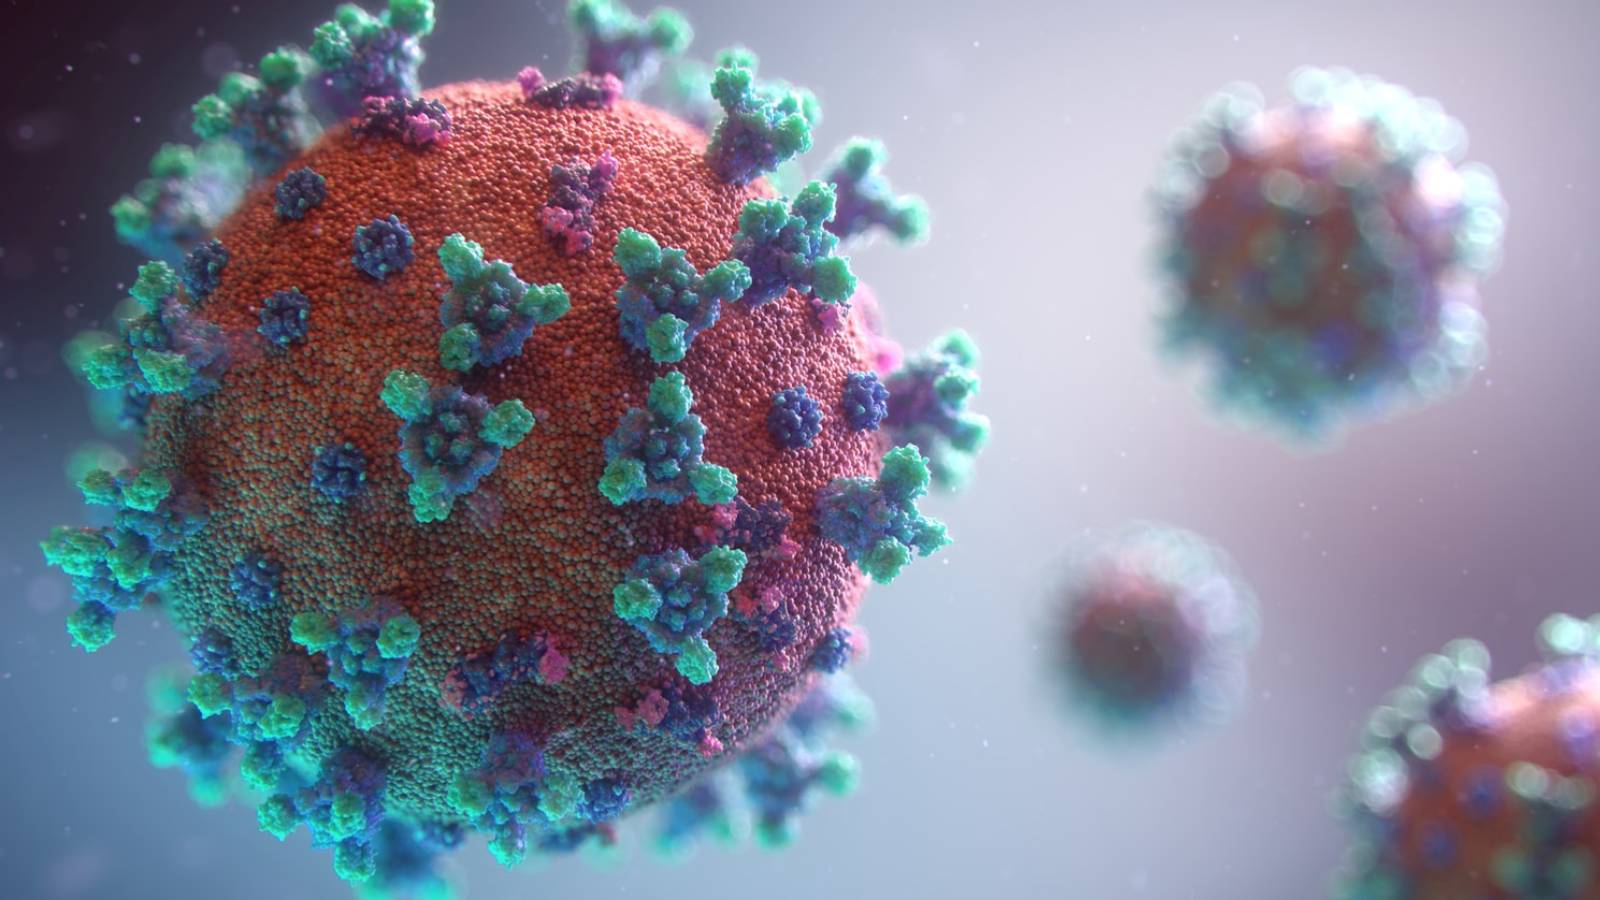 Coronavirus La Romania vaccina domani 20.000 persone al giorno